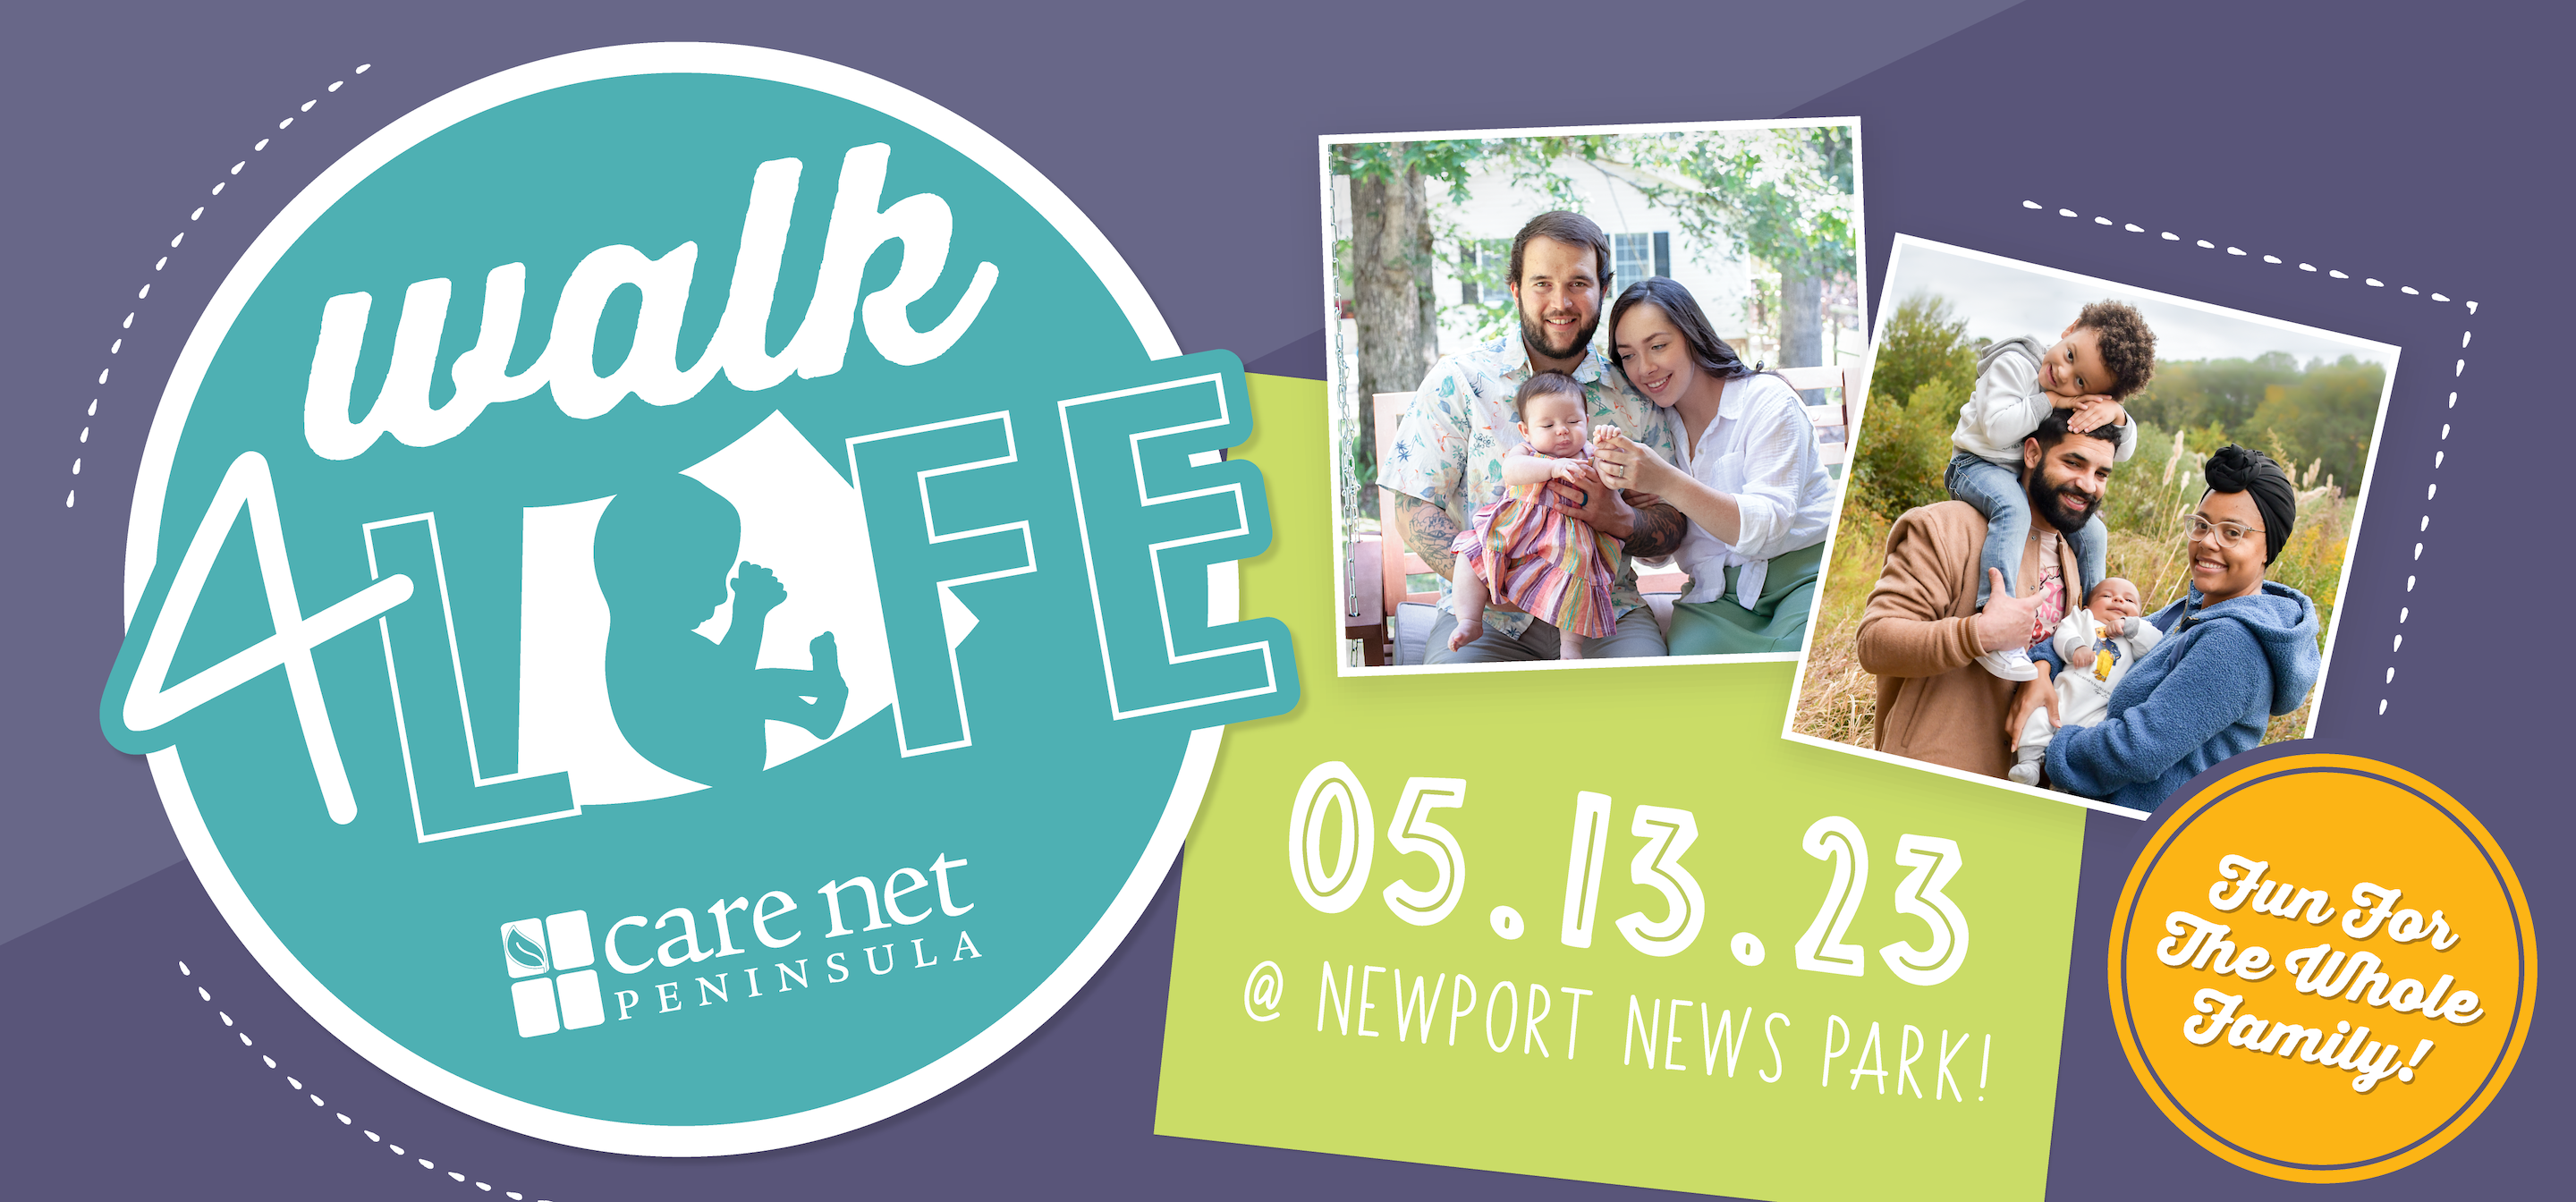 2023 Walk4Life on May 13th at Newport News Park